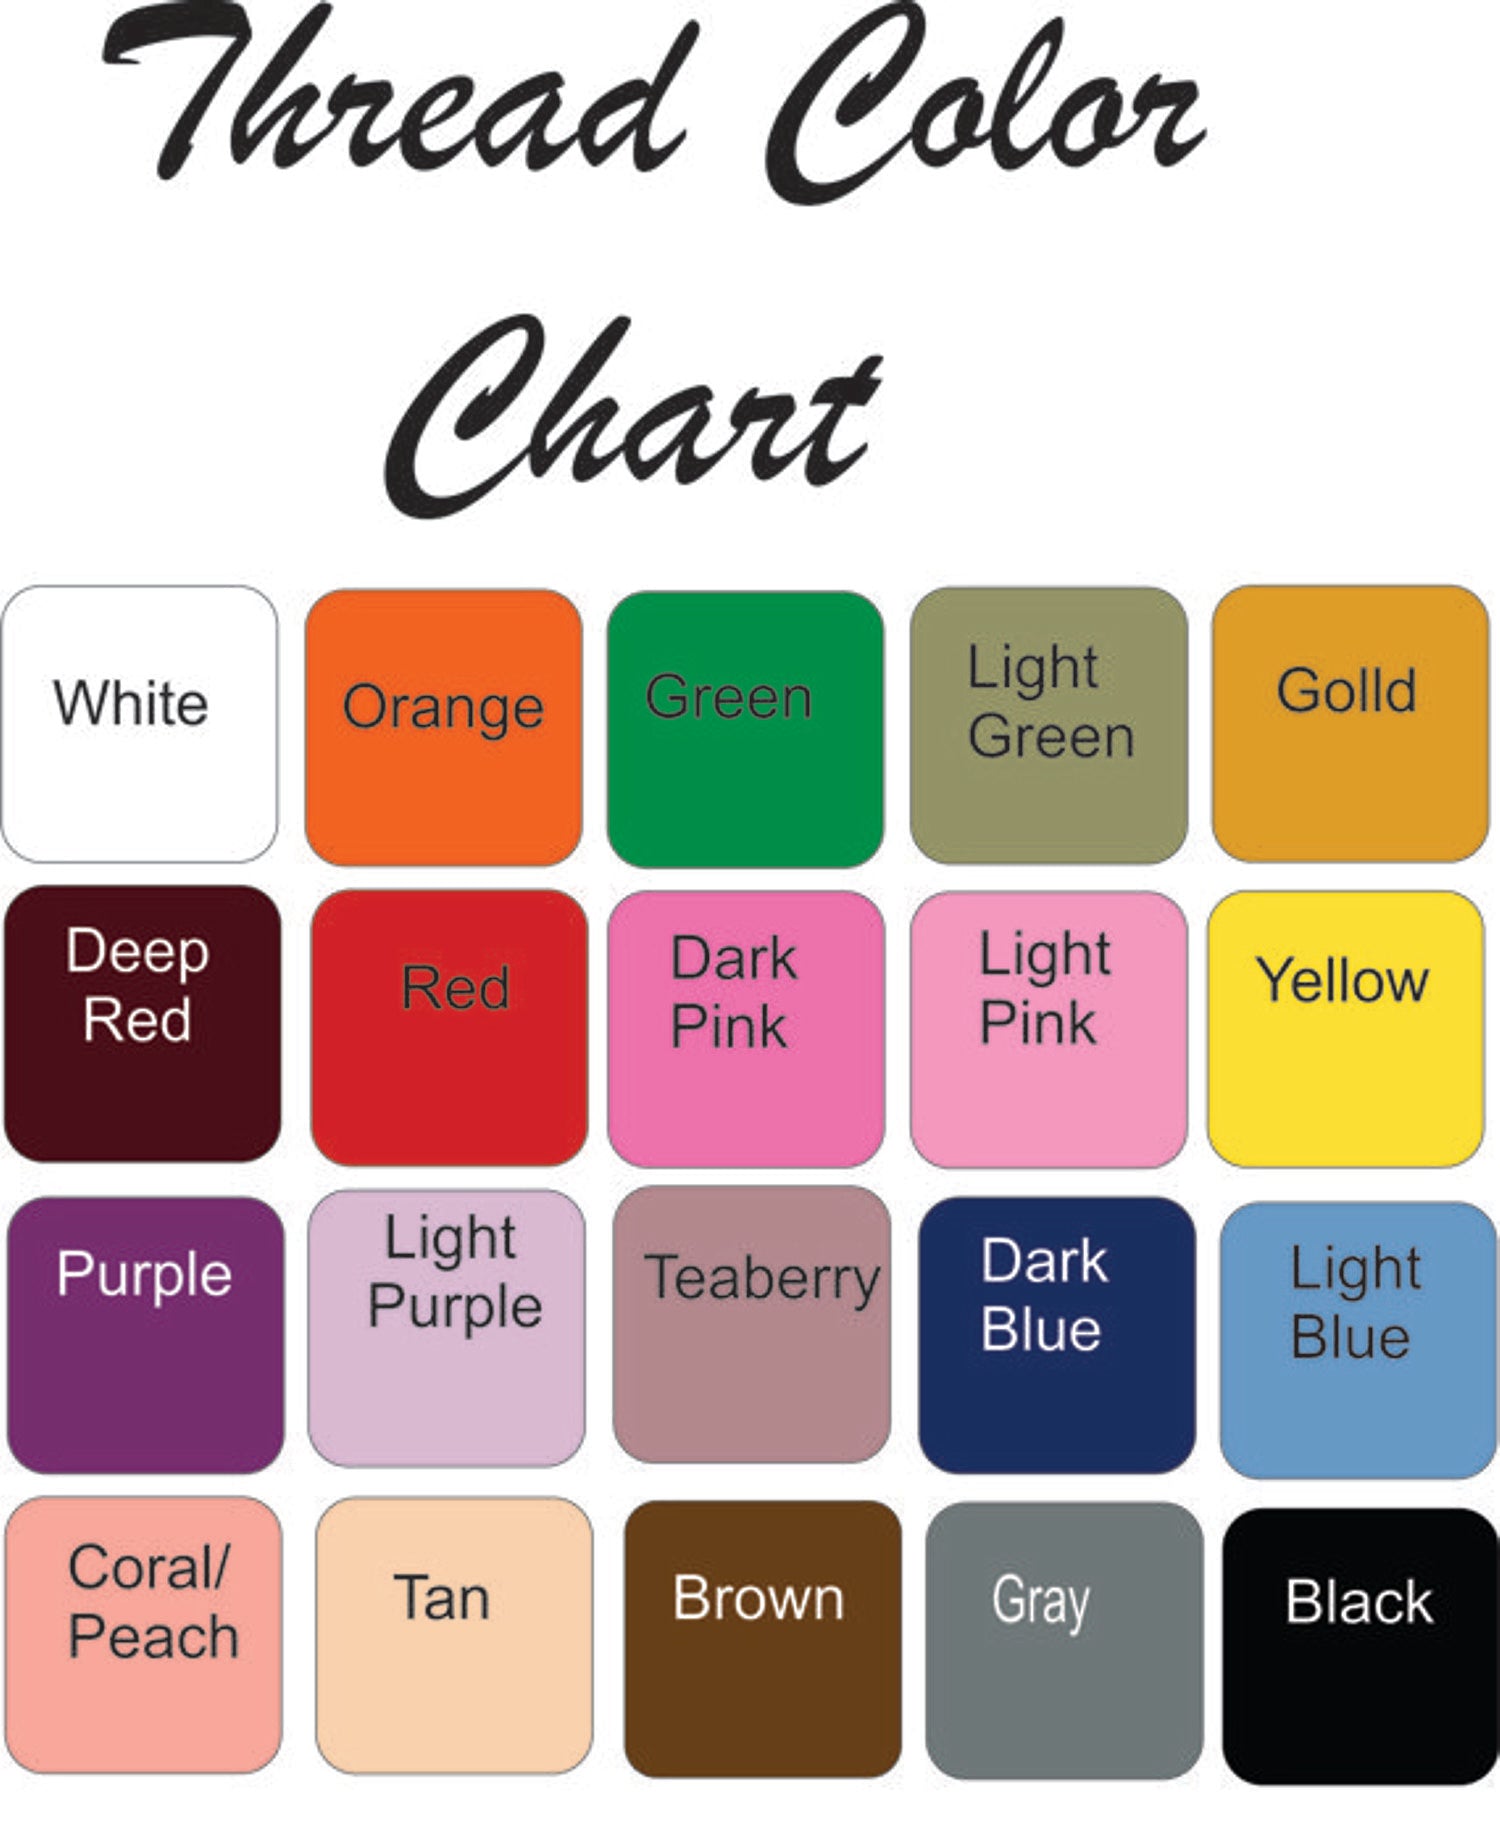 Thread Color Chart - bath towel - Borgmanns Creations 